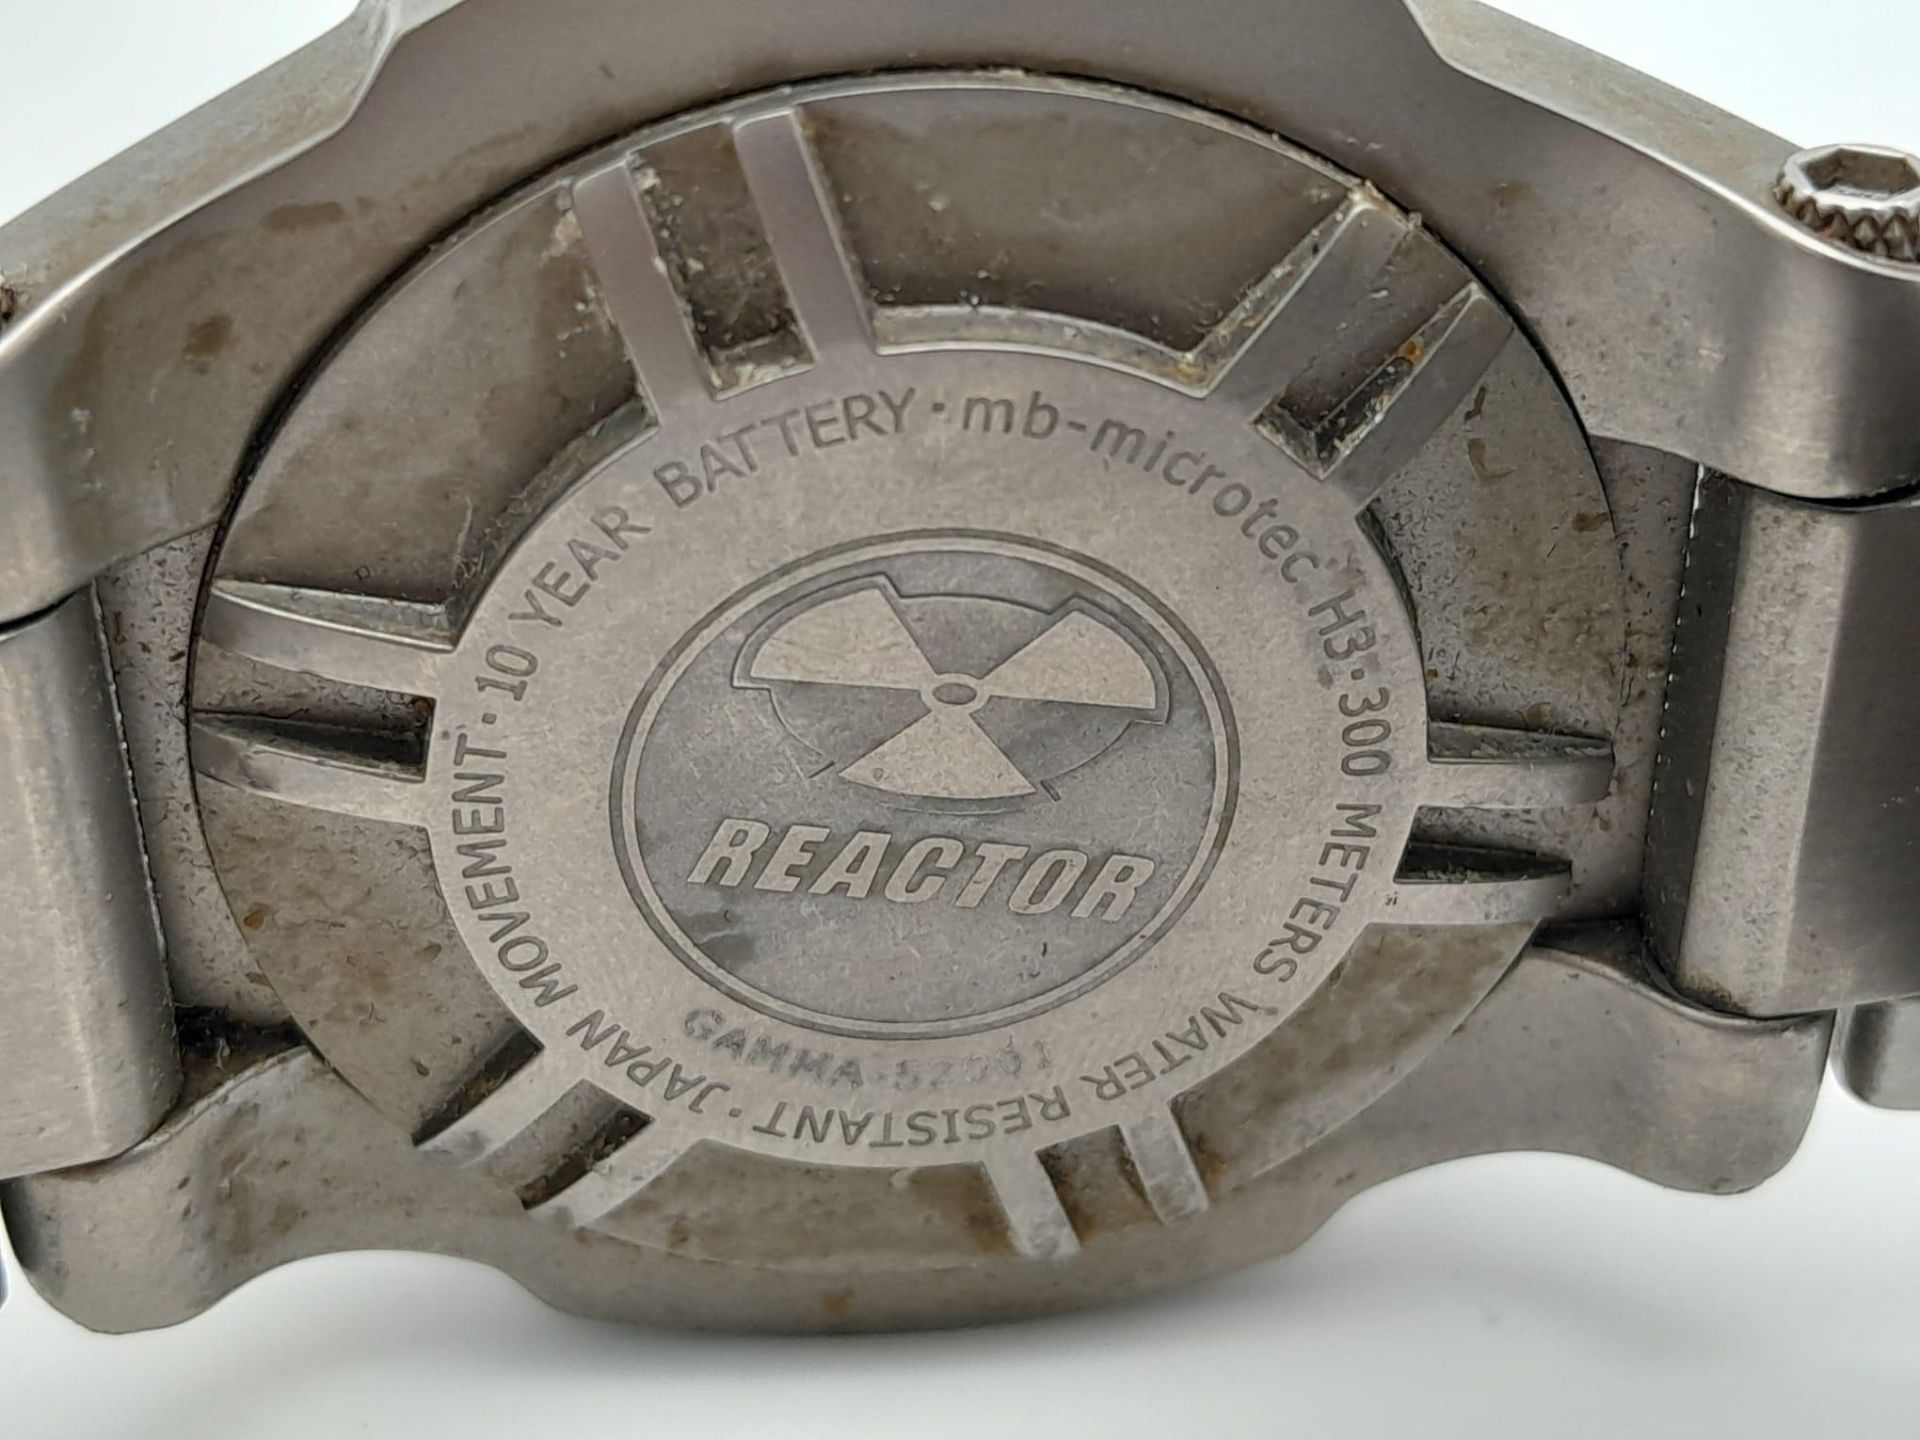 A Reactor Titanium 300M Water Resistant Quartz Gents Watch. Titanium bracelet and case - 45mm. Black - Image 5 of 5